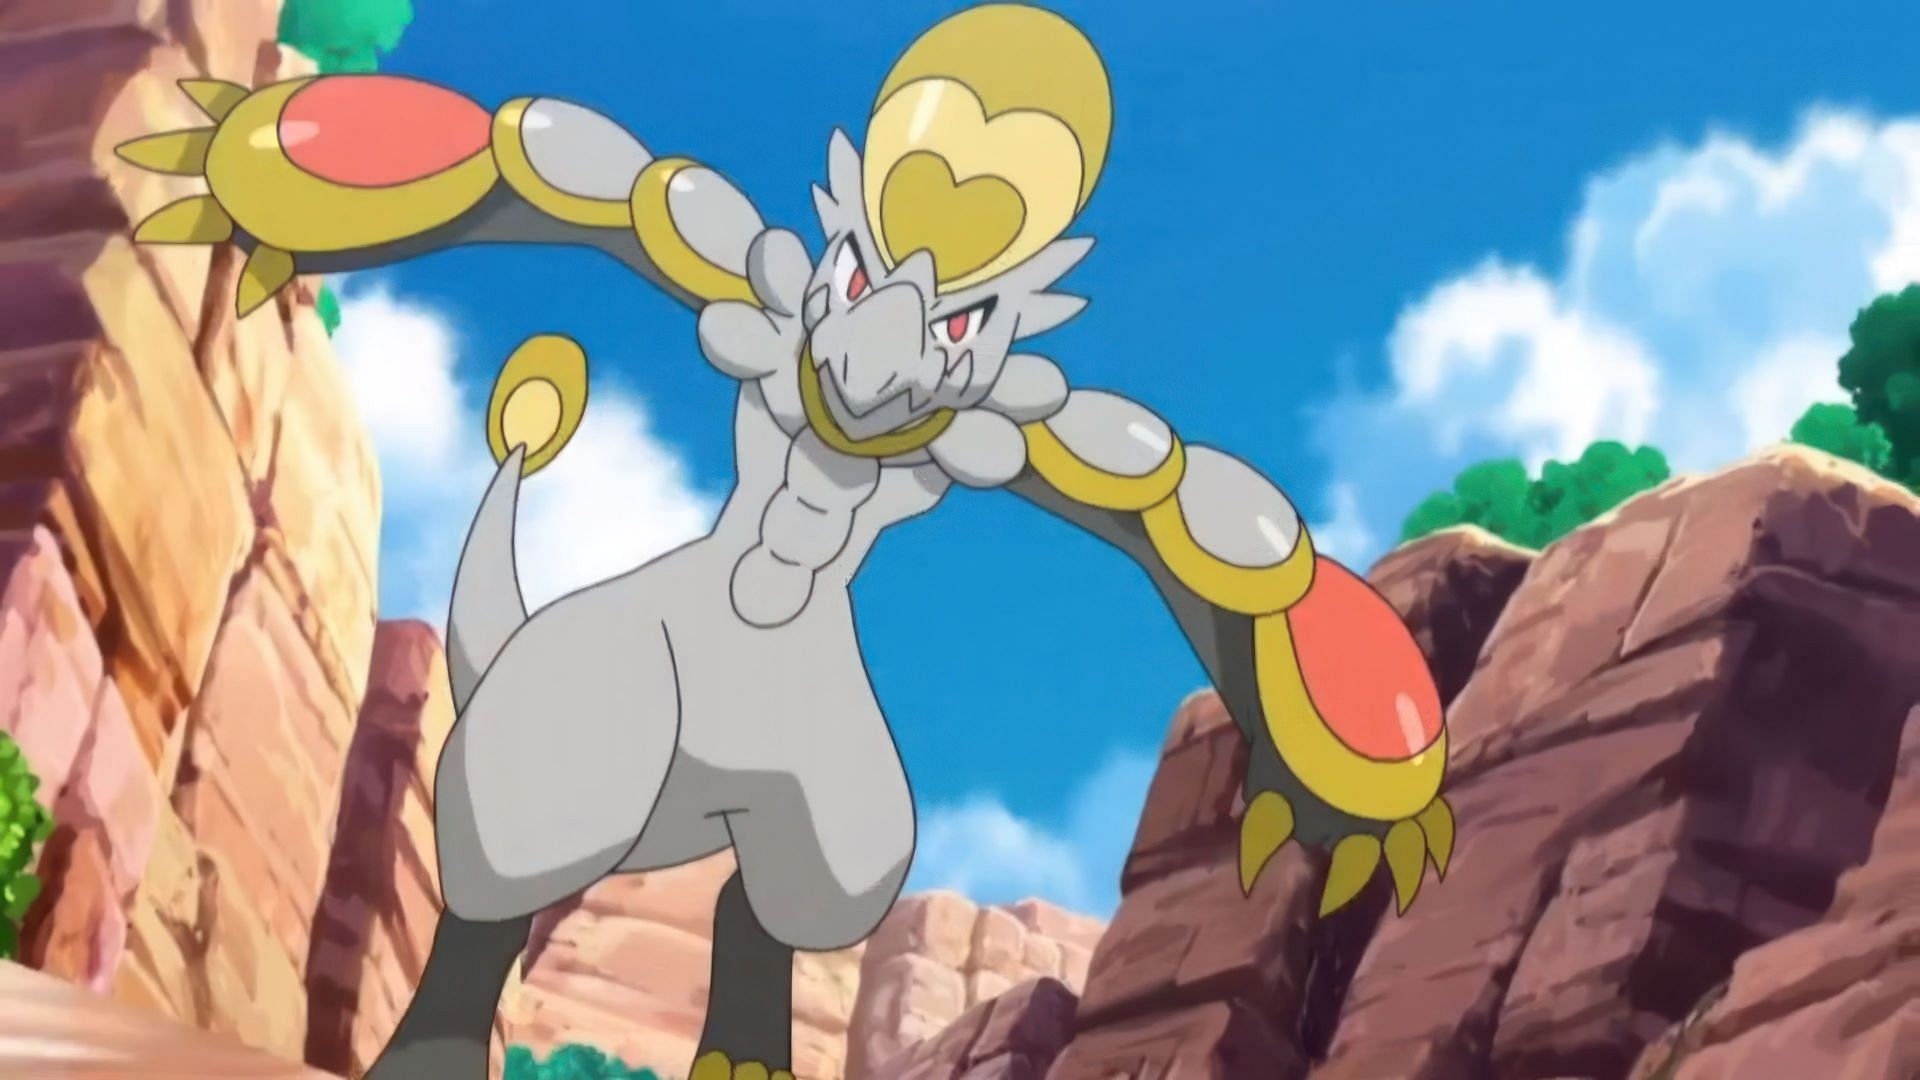 Hakamo-o as seen in the anime (Image via The Pokemon Company)